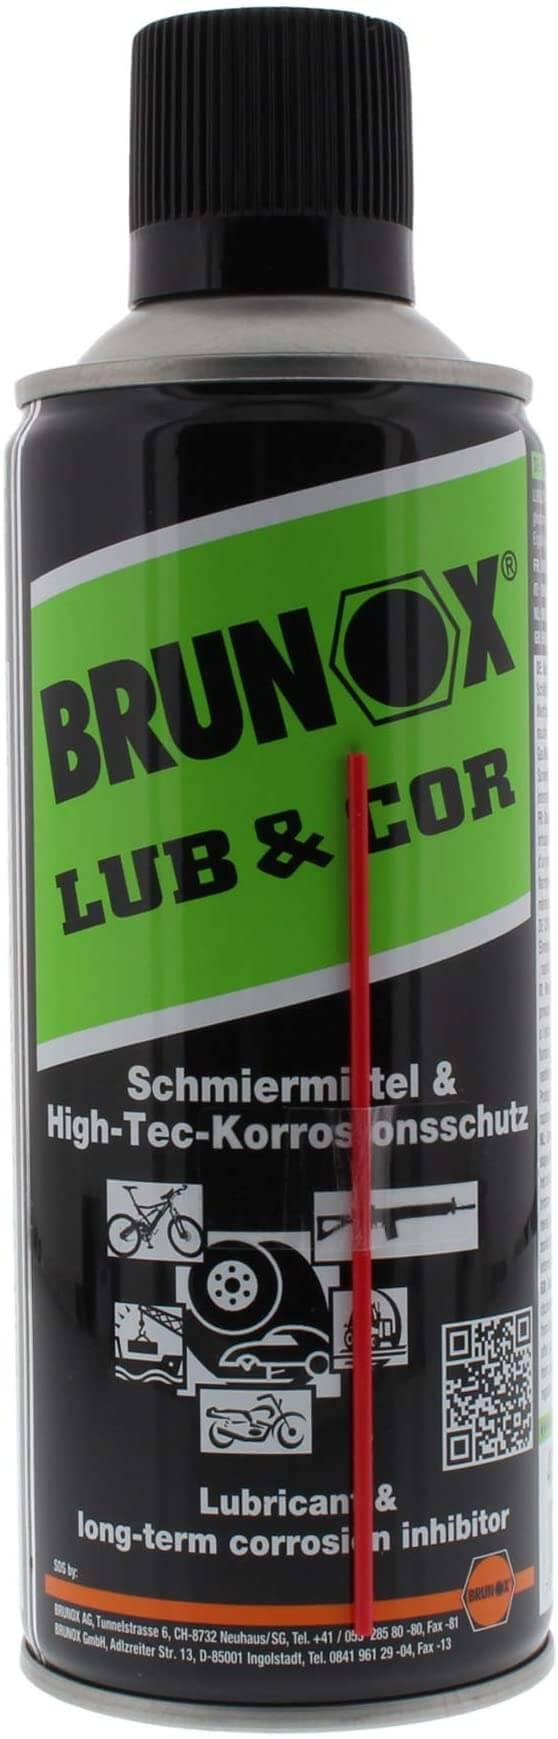 Brunox Lub & Cor, 400 ml